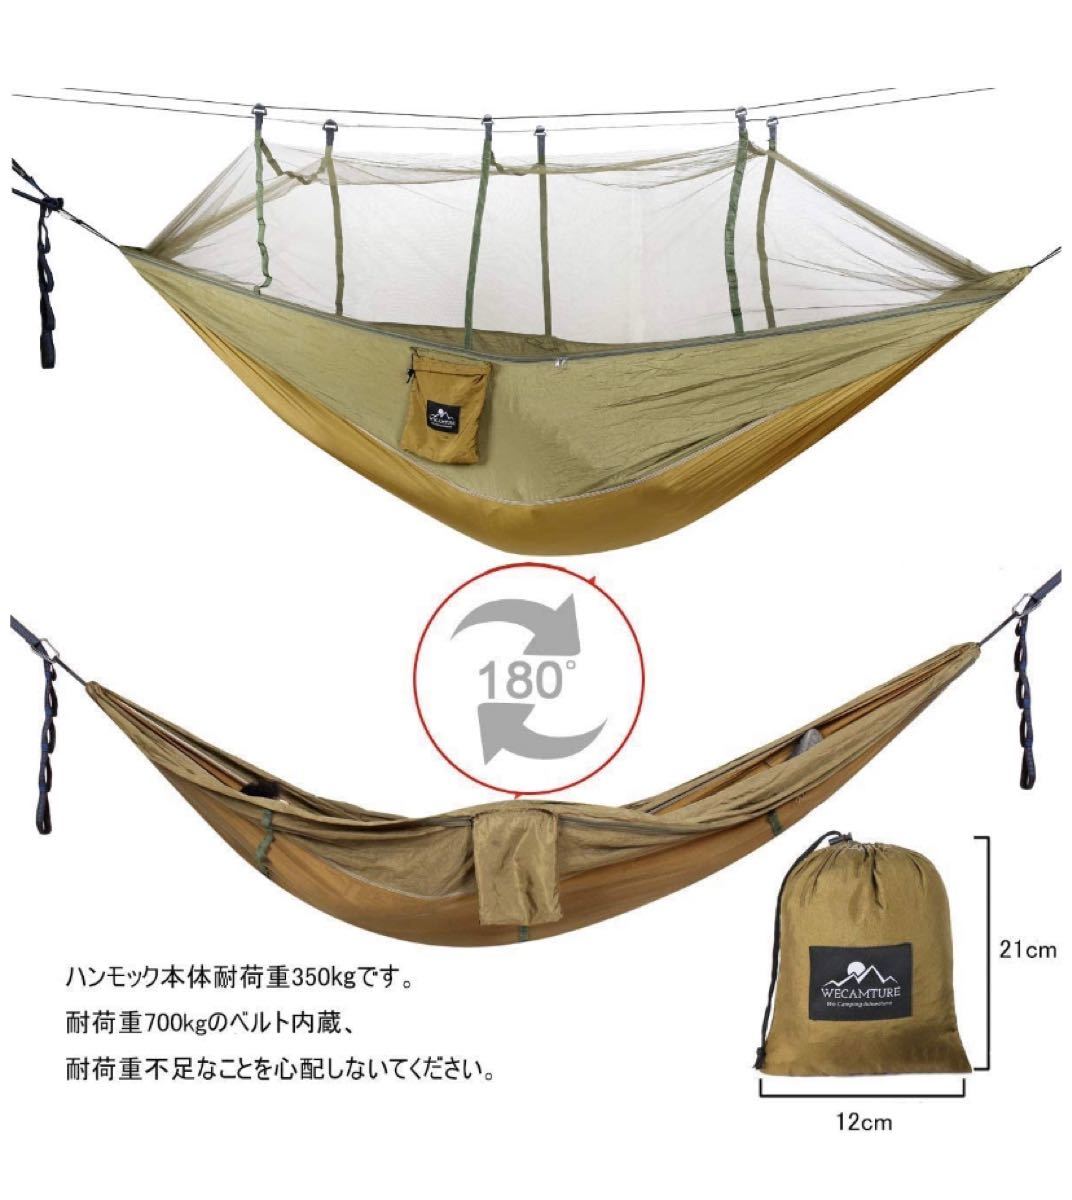 ハンモック 蚊帳付き パラシュート 耐荷重 超広い 2人用 収納袋付き 